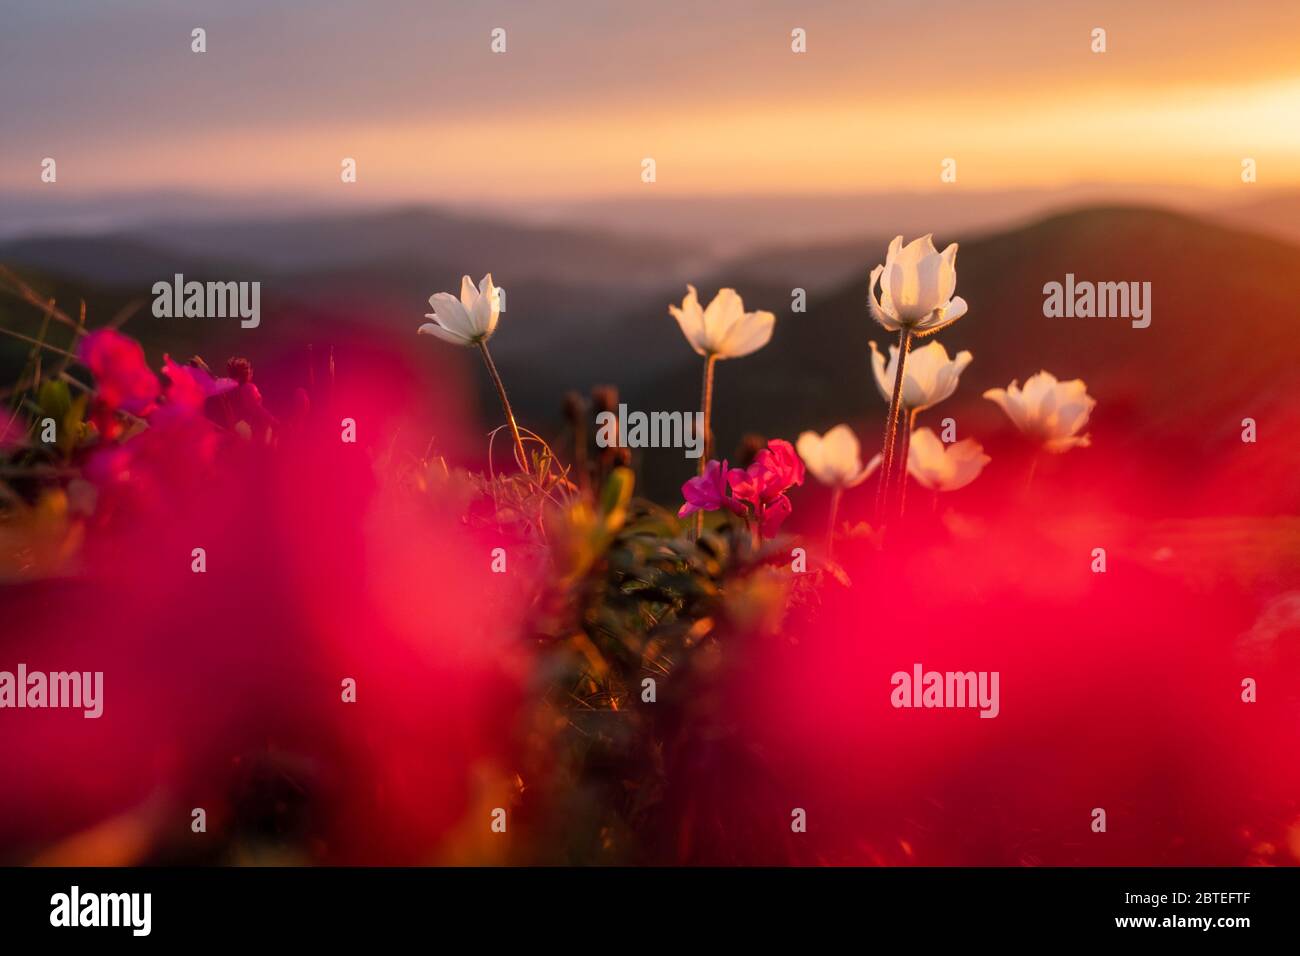 Fantastische Landschaft mit magischen, rosafarbenen Rendodendron und weißen Blumen in den Sommerbergen. Unglaubliches Licht bei Sonnenuntergang. Hintergrund der Natur. Landschaftsfotografie Stockfoto